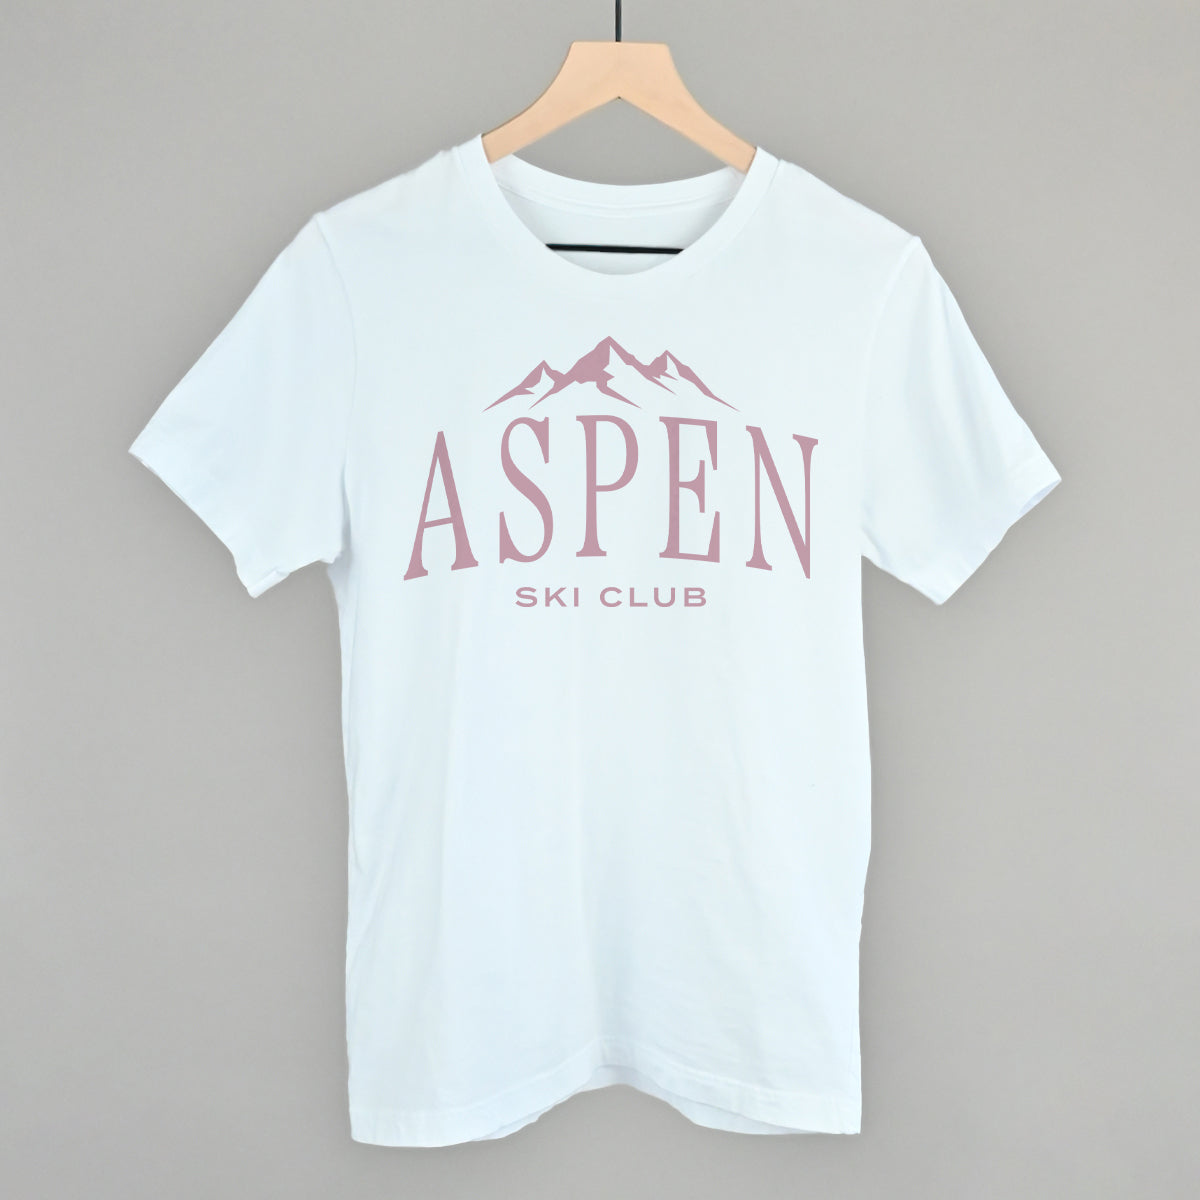 Aspen Ski Club